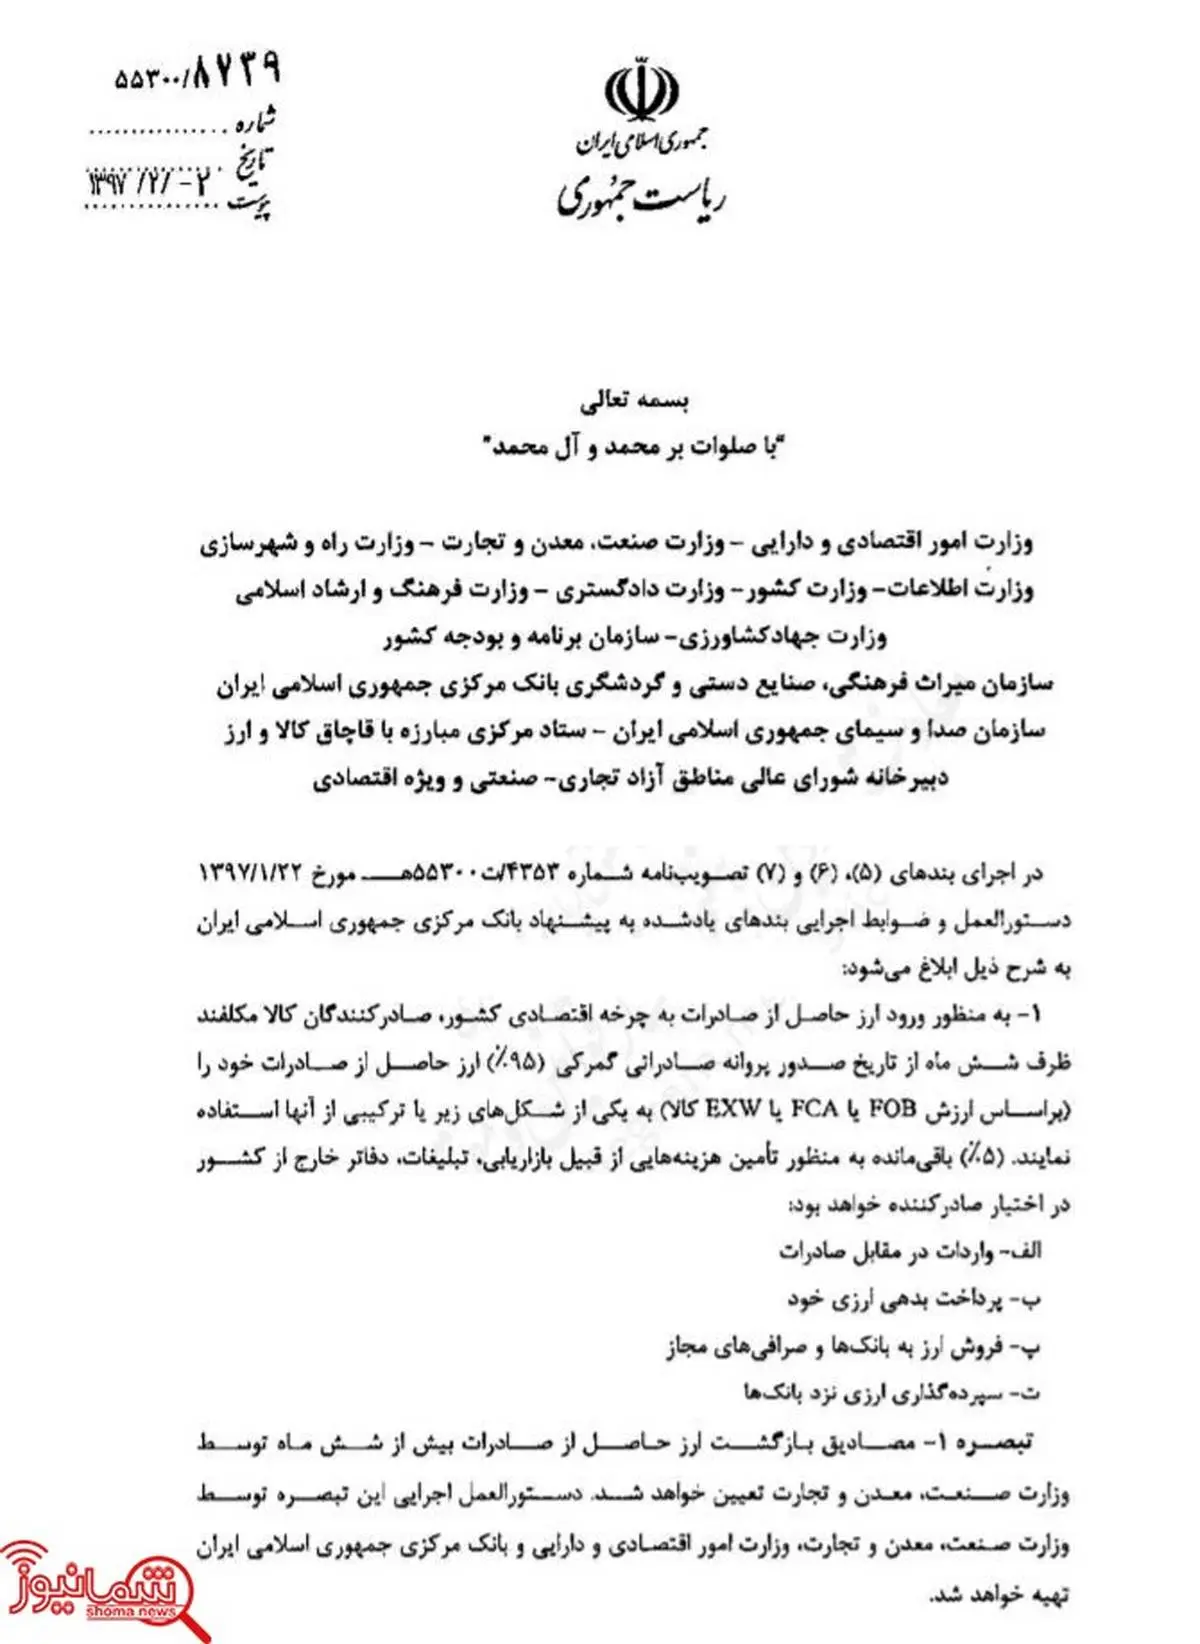 مهلت ۶ ماهه دولت به صادرکنندگان برای بازگرداندن ارز